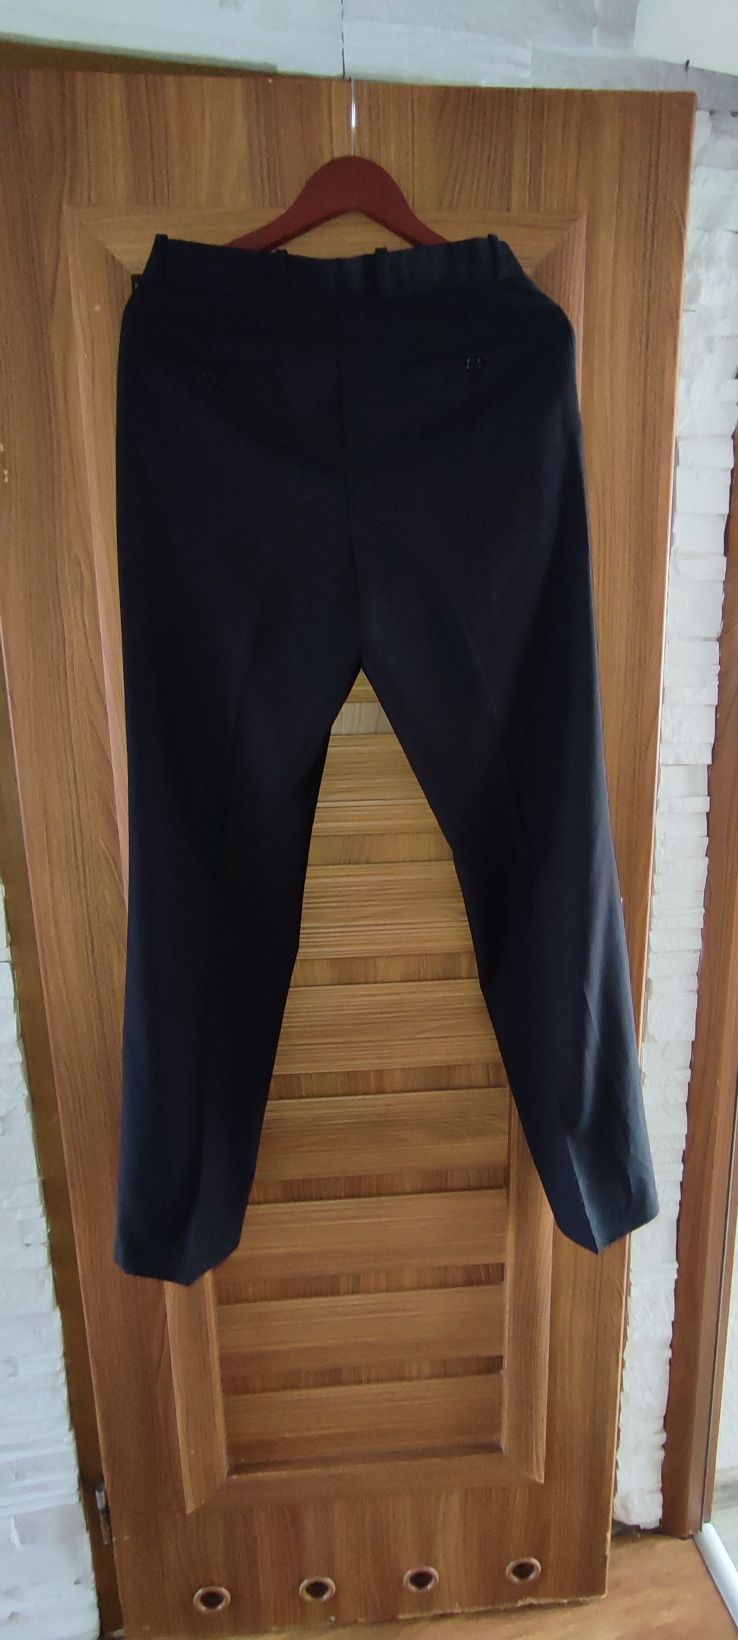 Nowe spodnie garniturowe klasyczne czarne rozm M wymiary na fotkach